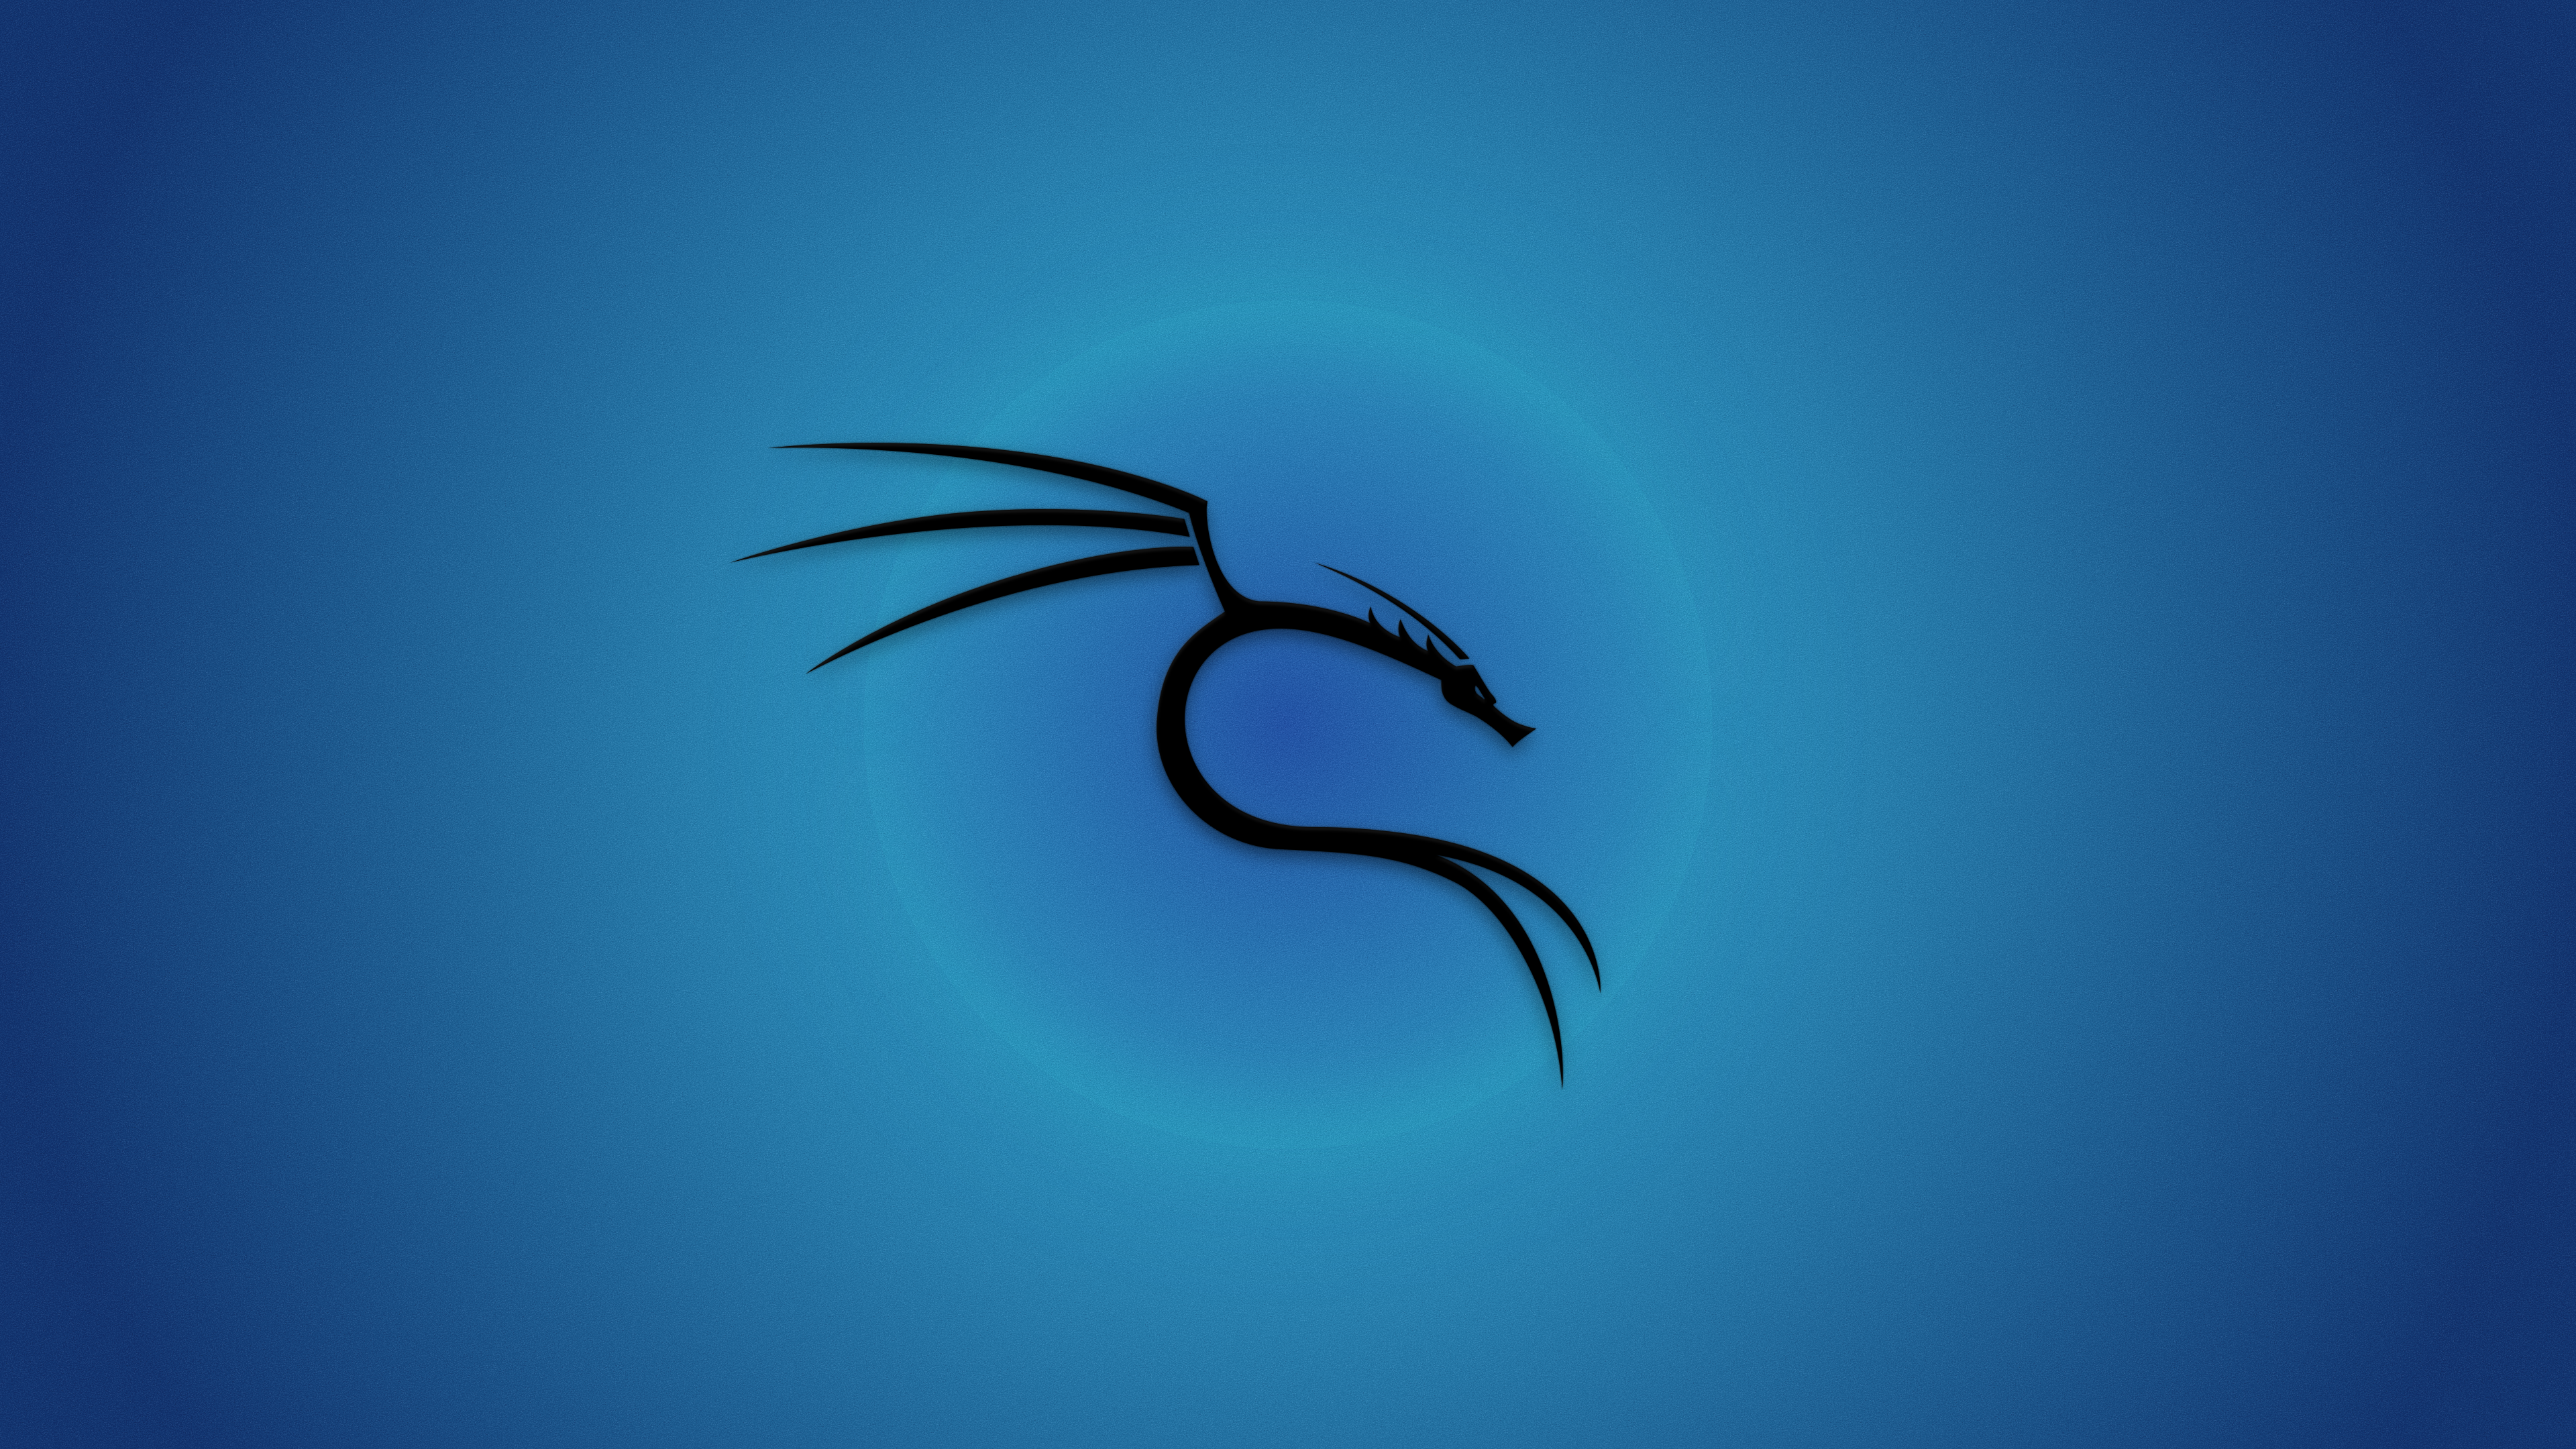 General 3840x2160 Kali Linux Backtrack Linux Linux blue background operating system digital art simple background